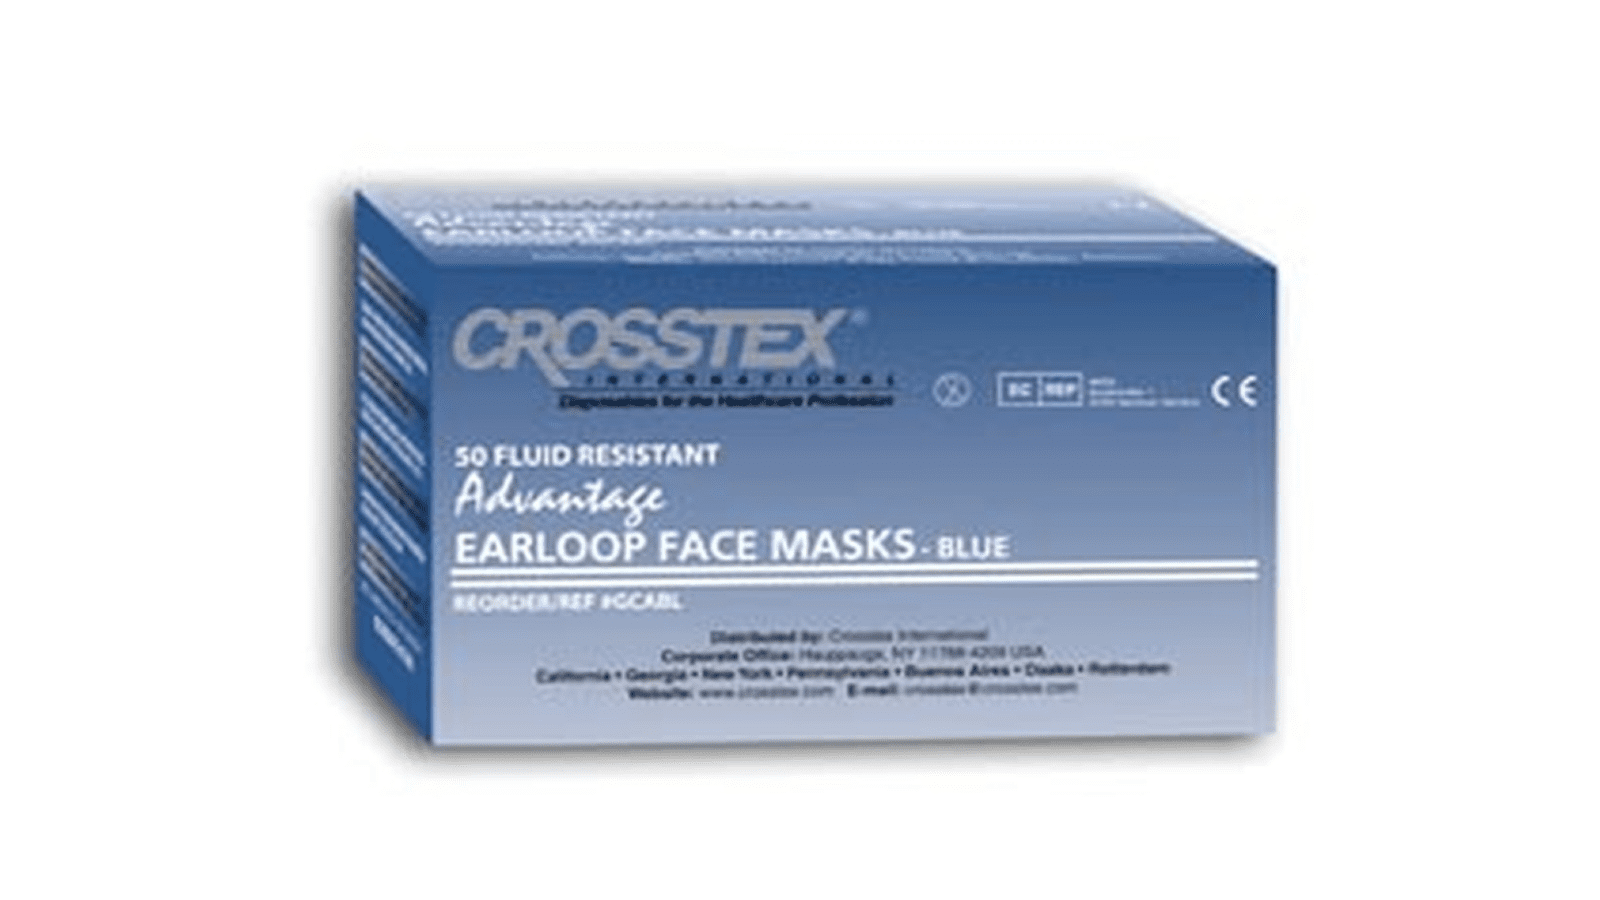 Crosstex earloop face mask